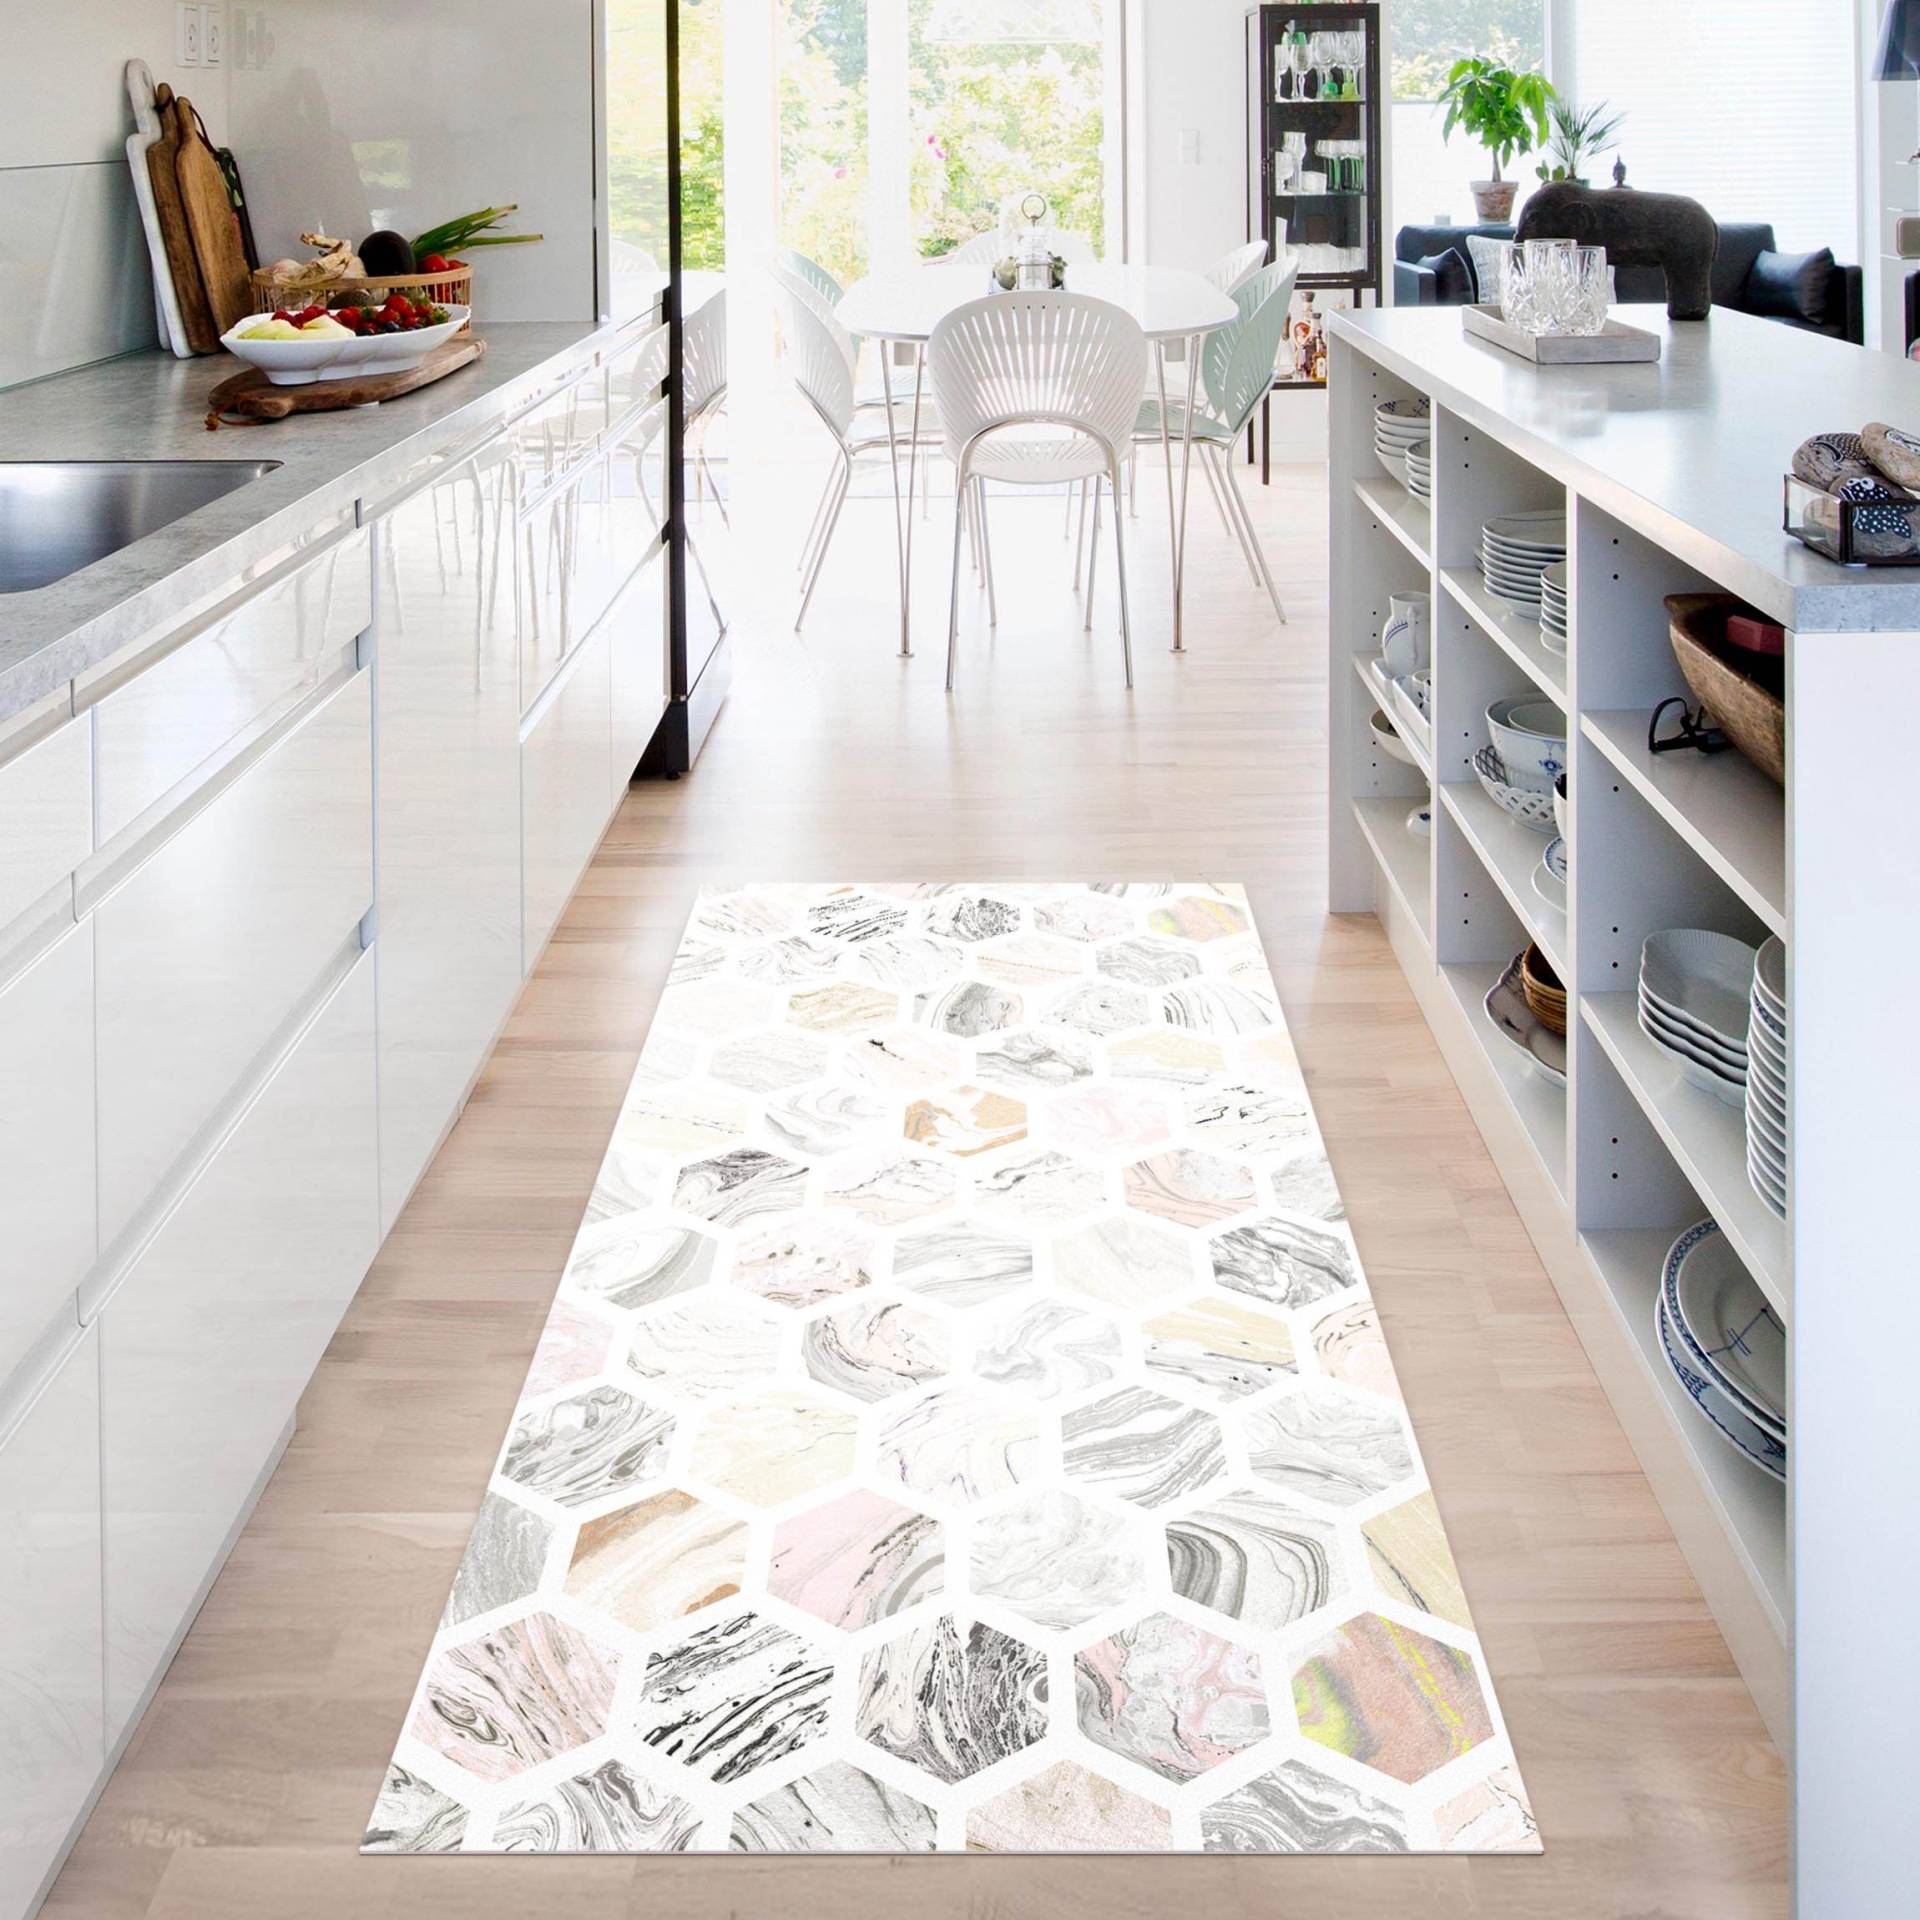 Vinyl-Teppich Marmor Hexagone in Beige von Klebefieber